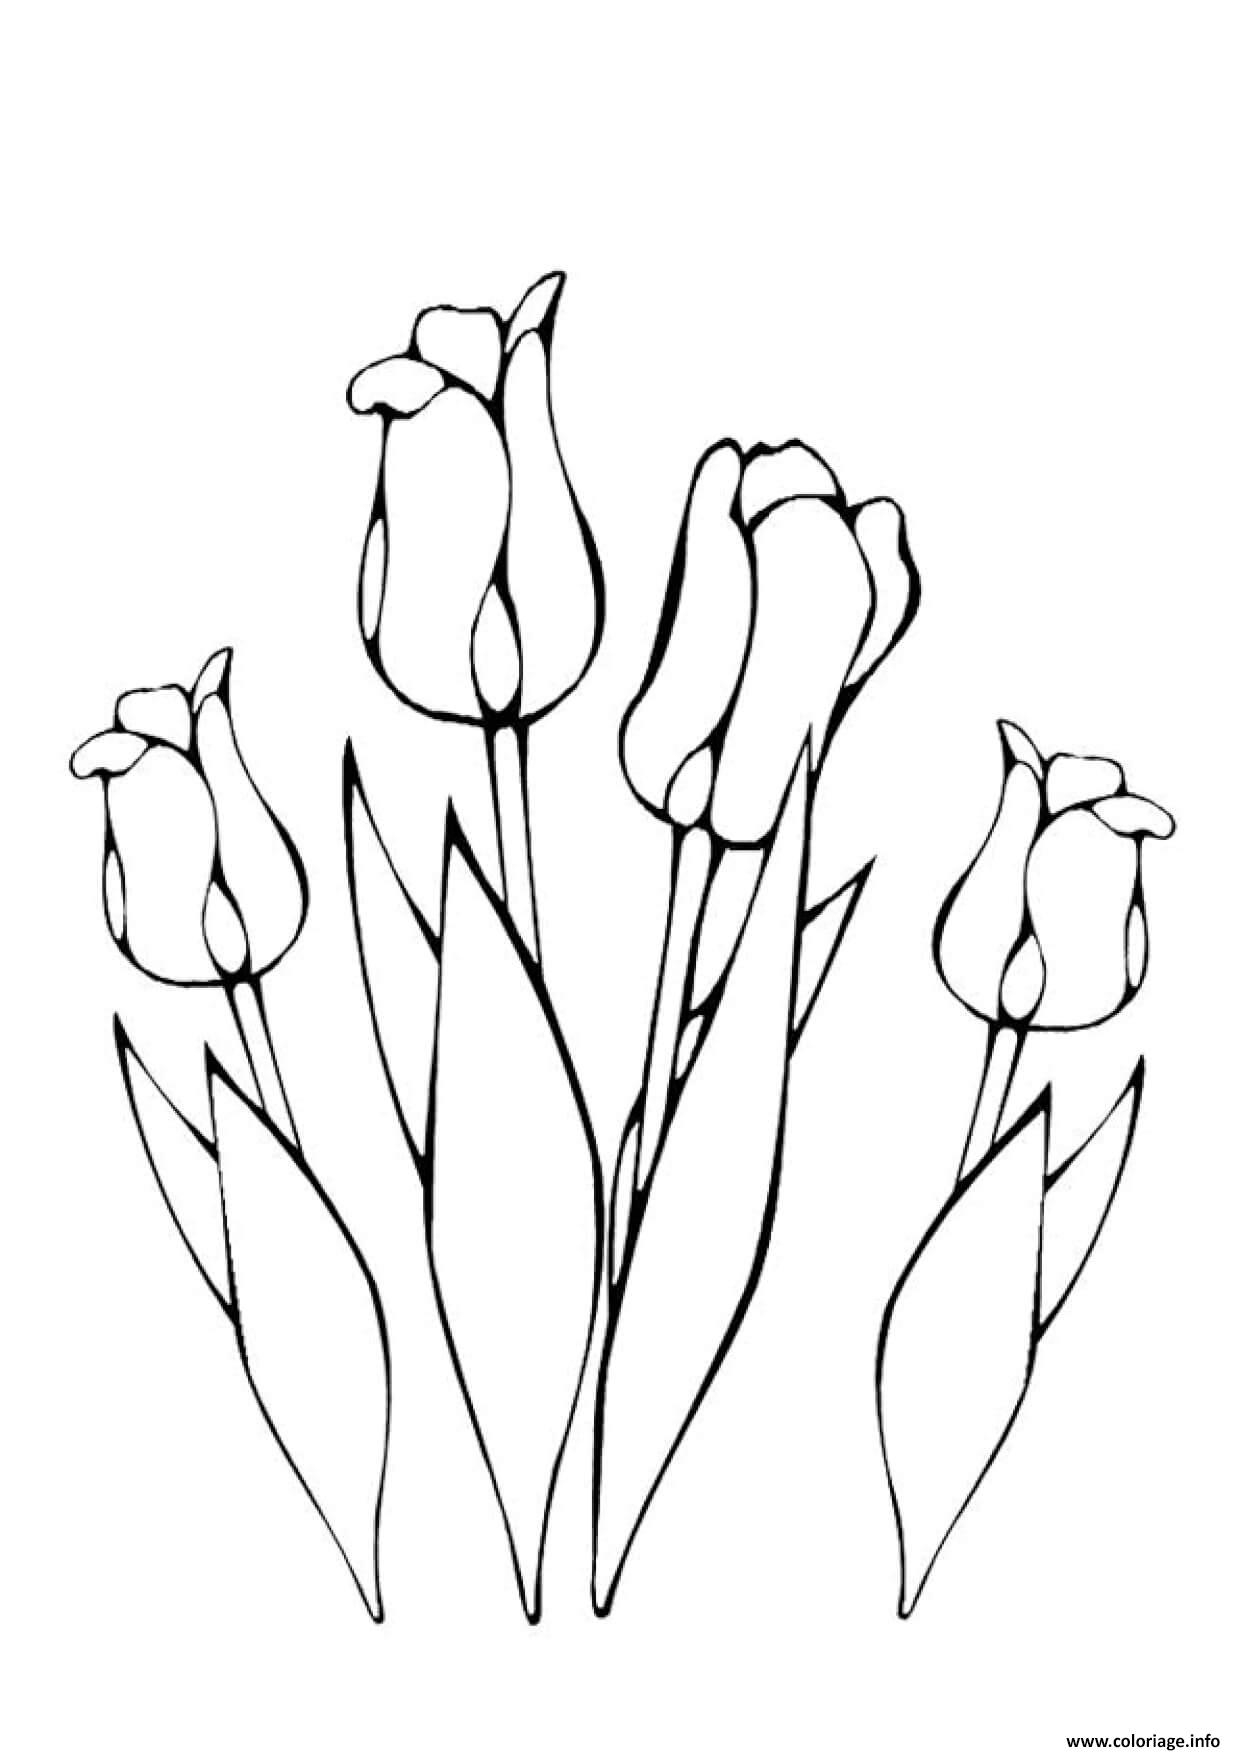 Coloriage Plusieurs Fleurs Tulipes Greigii Dessin À Imprimer pour Fleur Coloriage A Imprimer 